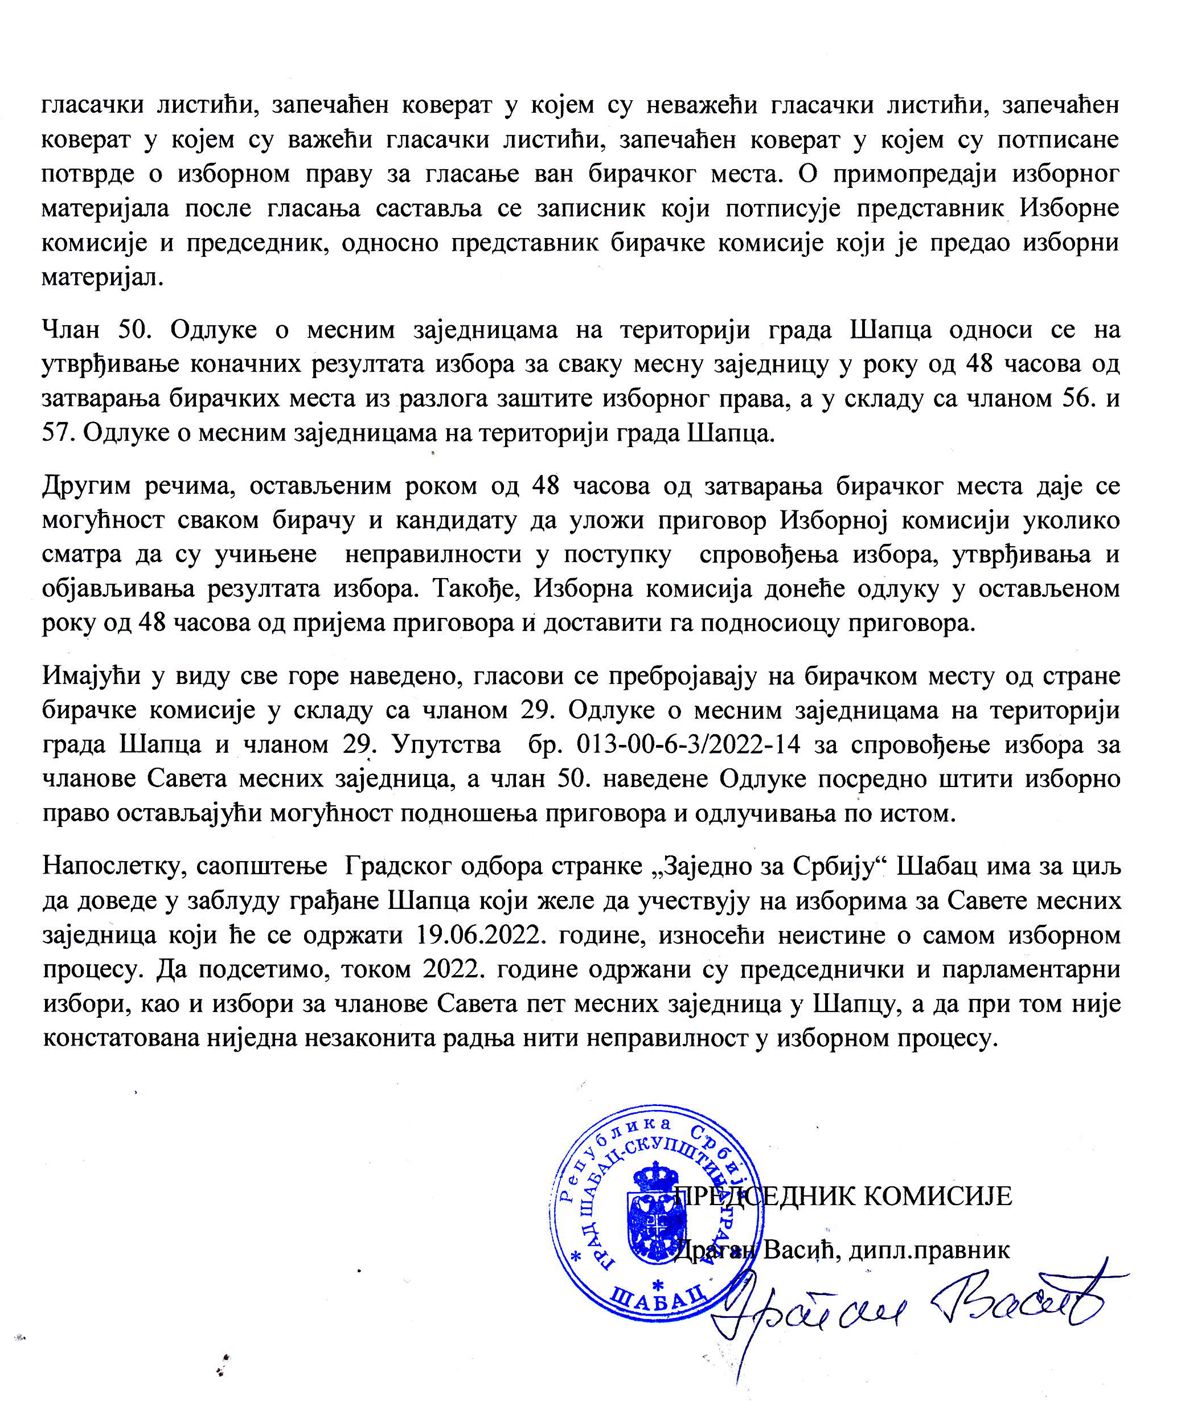 Gradska izborna komisija demantuje GO "Zajedno za Srbiju"